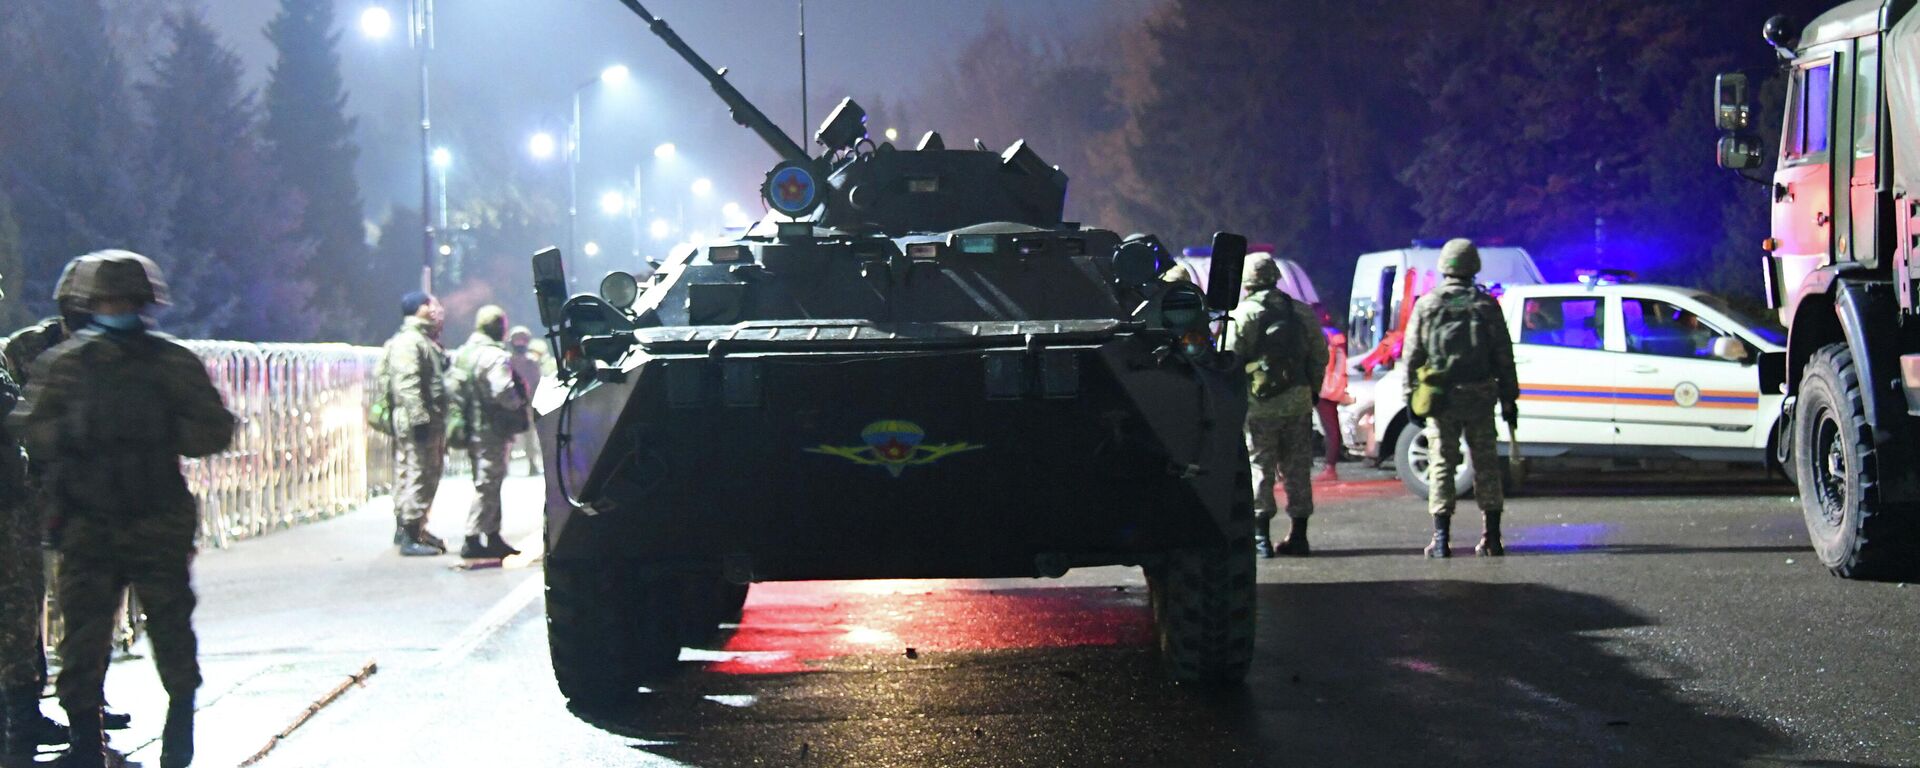 Военная техника возле мэрии Алматы во время акций протеста, вызванных повышением цен на газ, Казахстан, 5 января 2022 года - Sputnik Кыргызстан, 1920, 05.01.2022